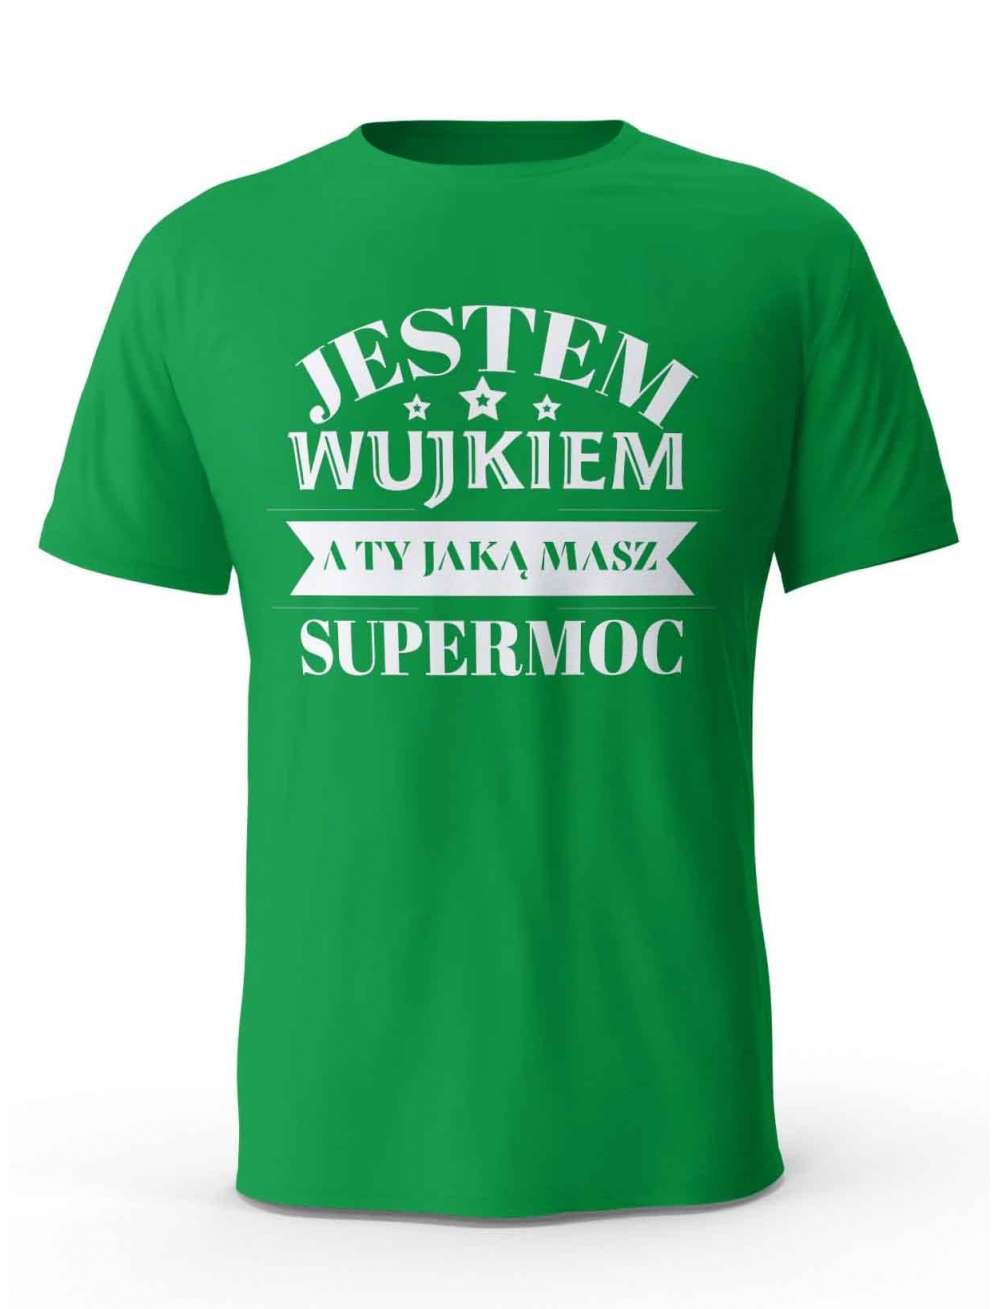 Koszulka Jestem Wujkiem a Ty Jaką masz Supermoc, T-shirt dla Wujka